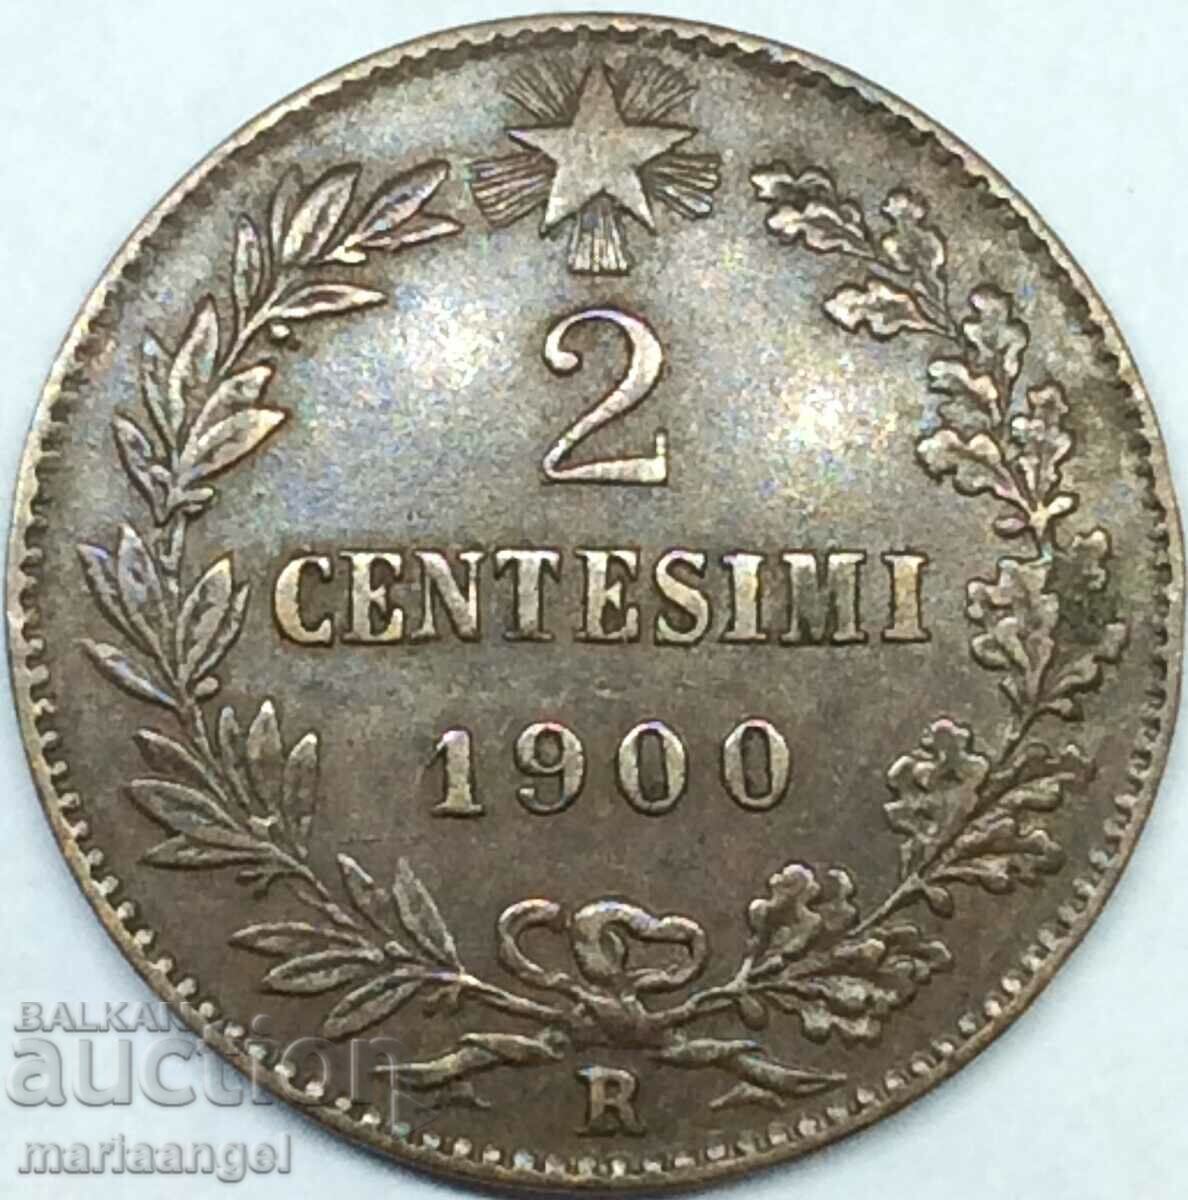 2 Centesimi 1900 Italy Umberto I